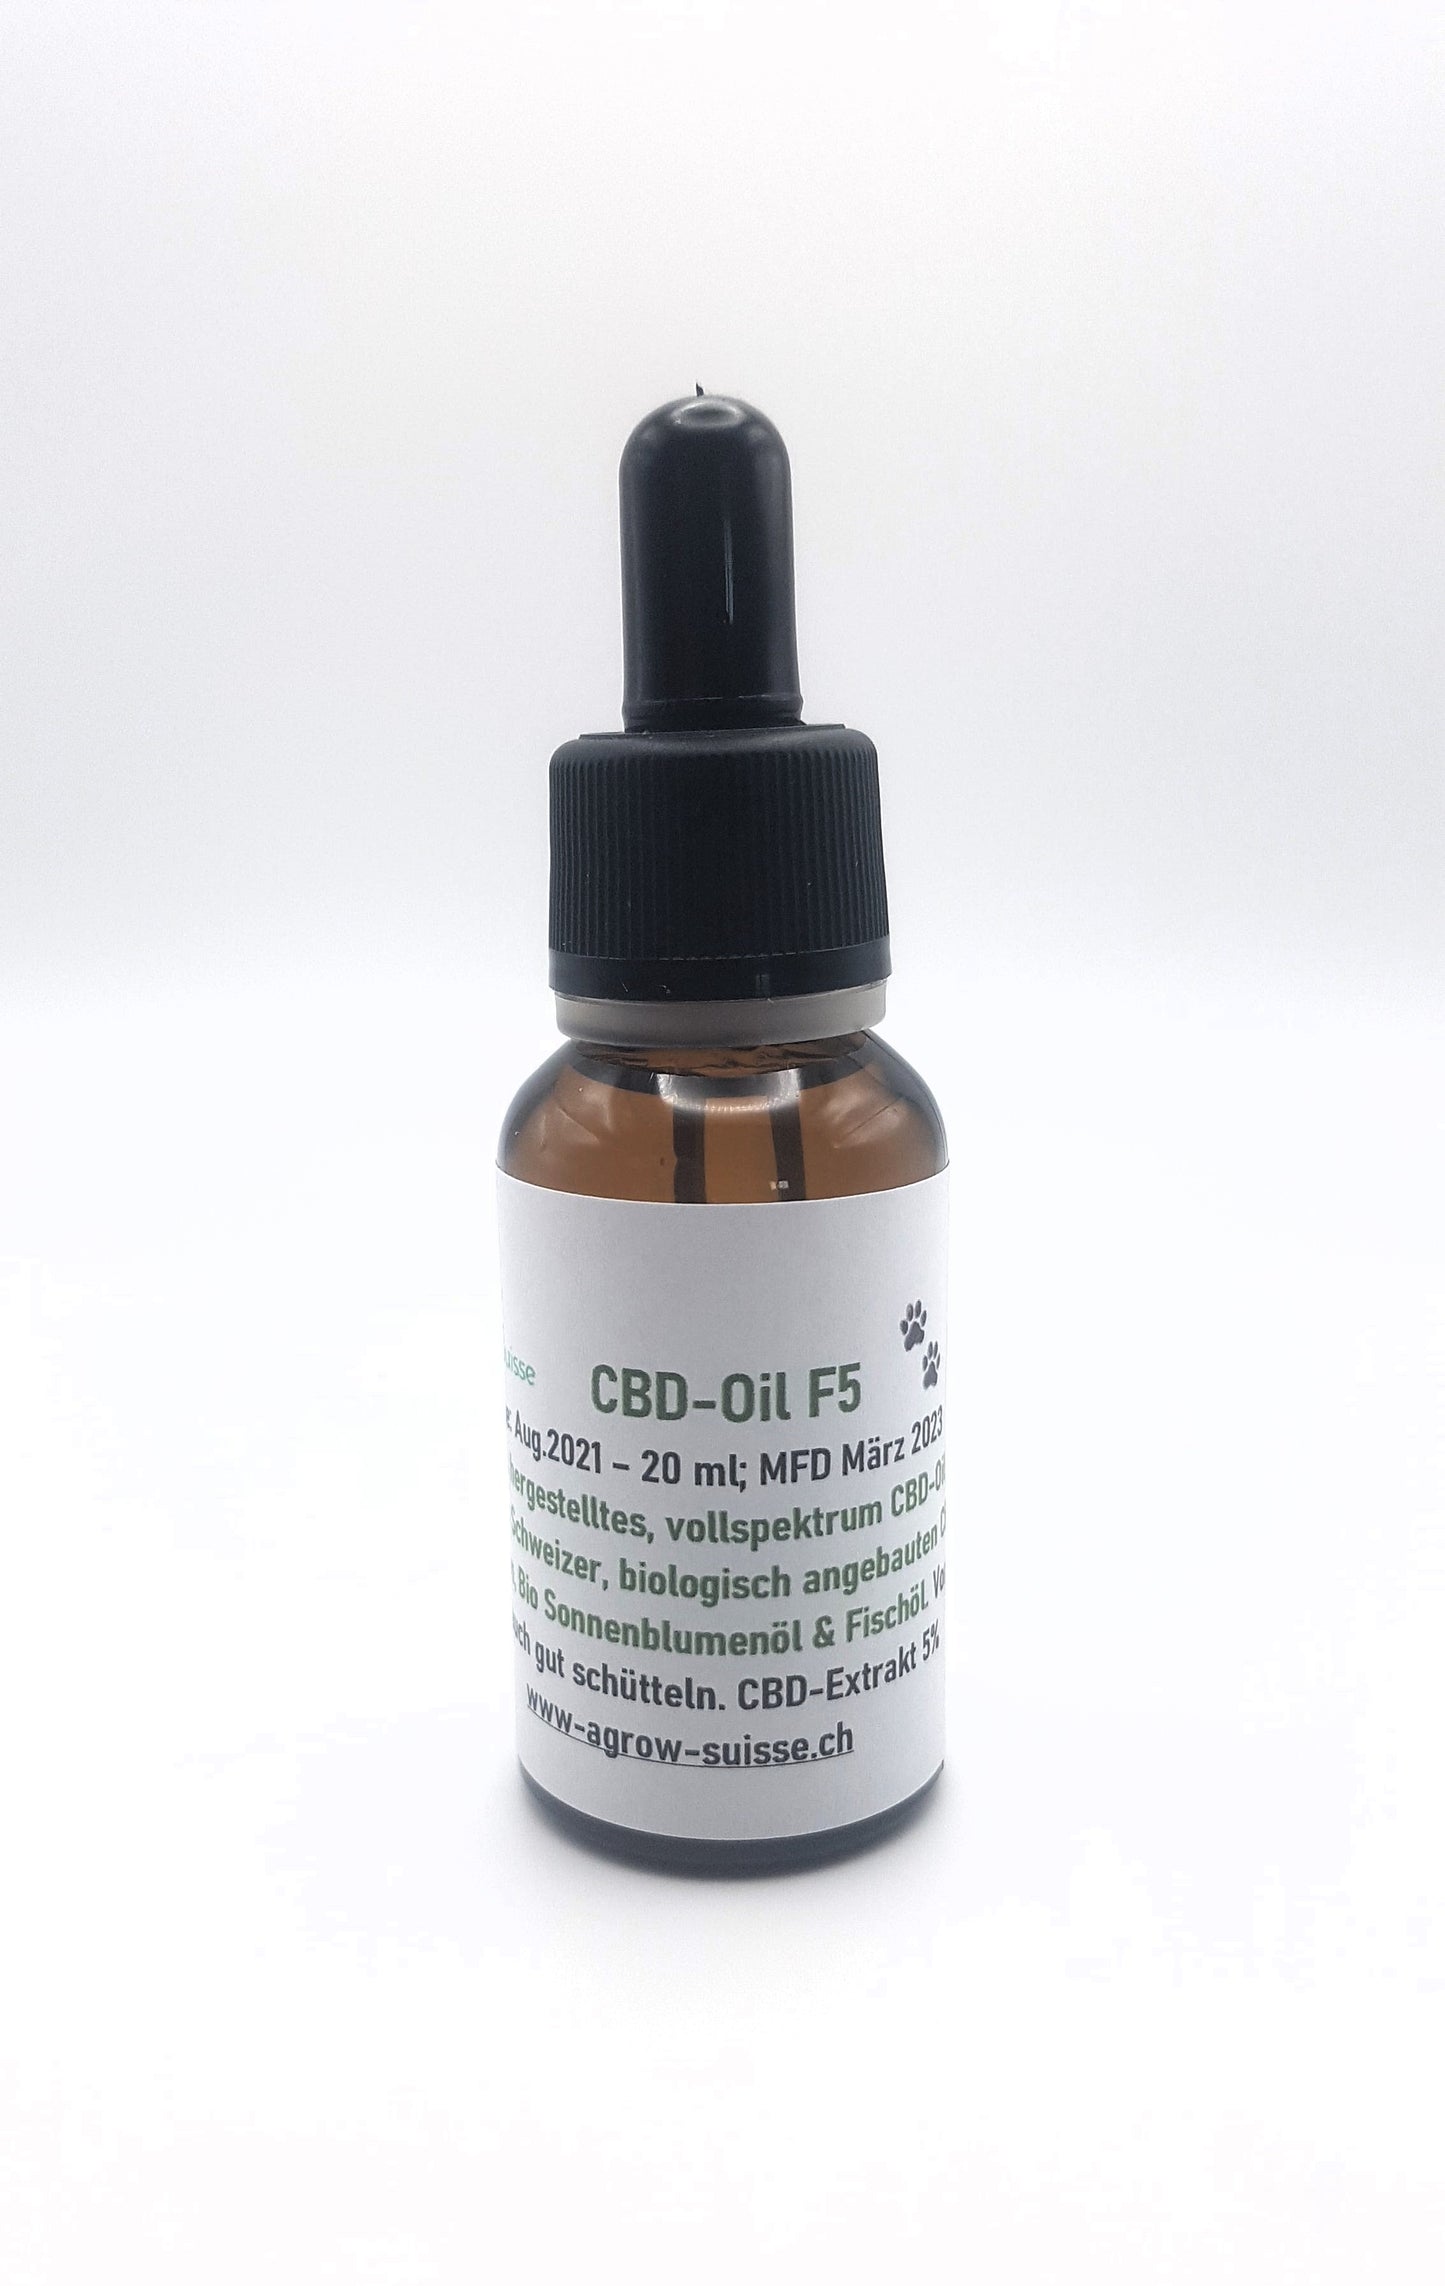 CBD-Oil F5 in Tropfenflasche